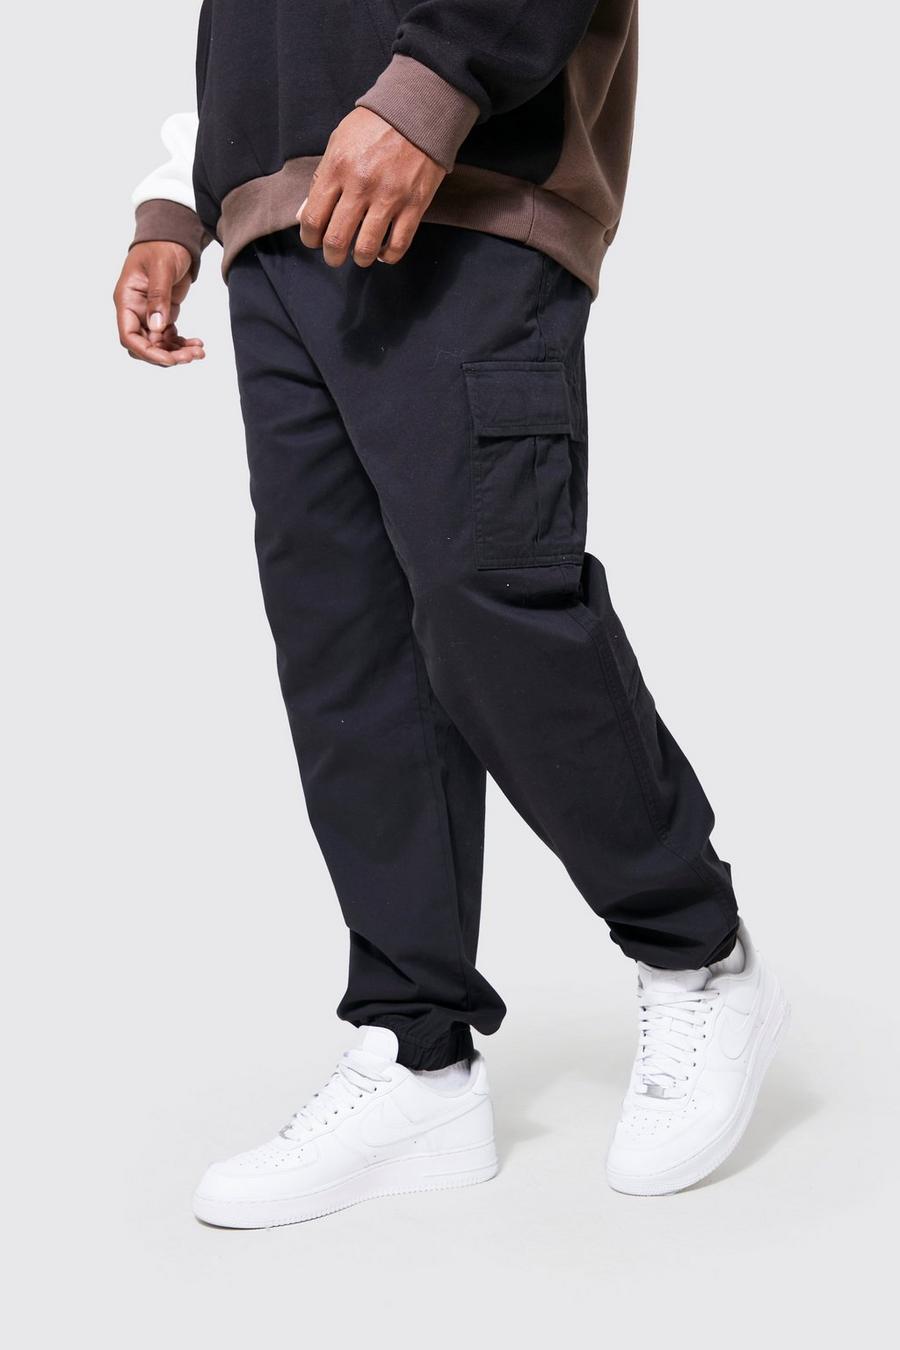 Pantaloni Cargo Plus Size Slim Fit, Black negro